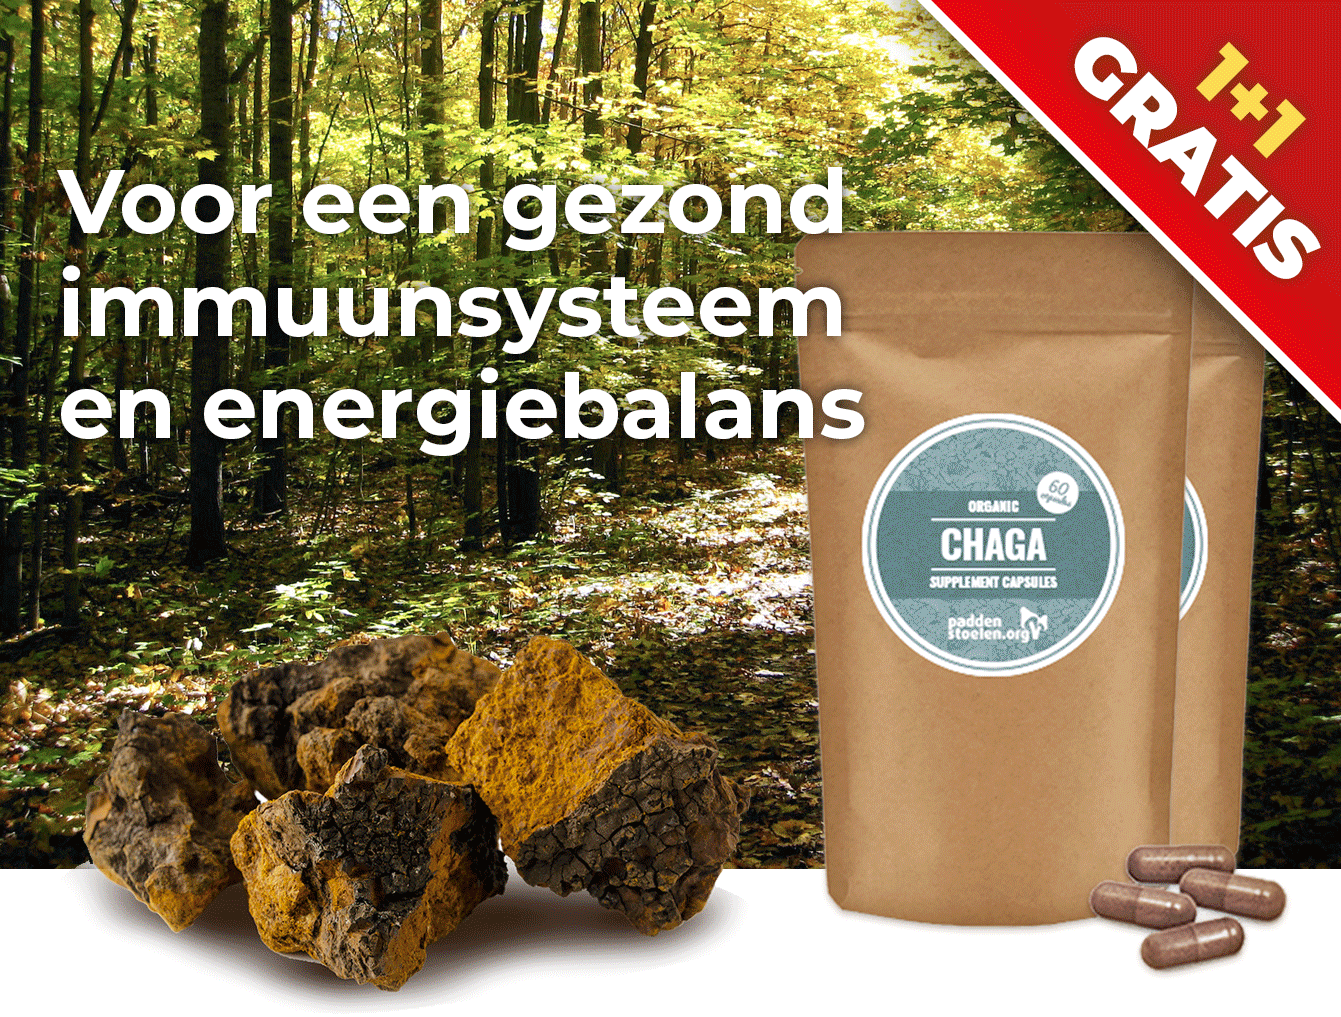 paddenstoelen.nl